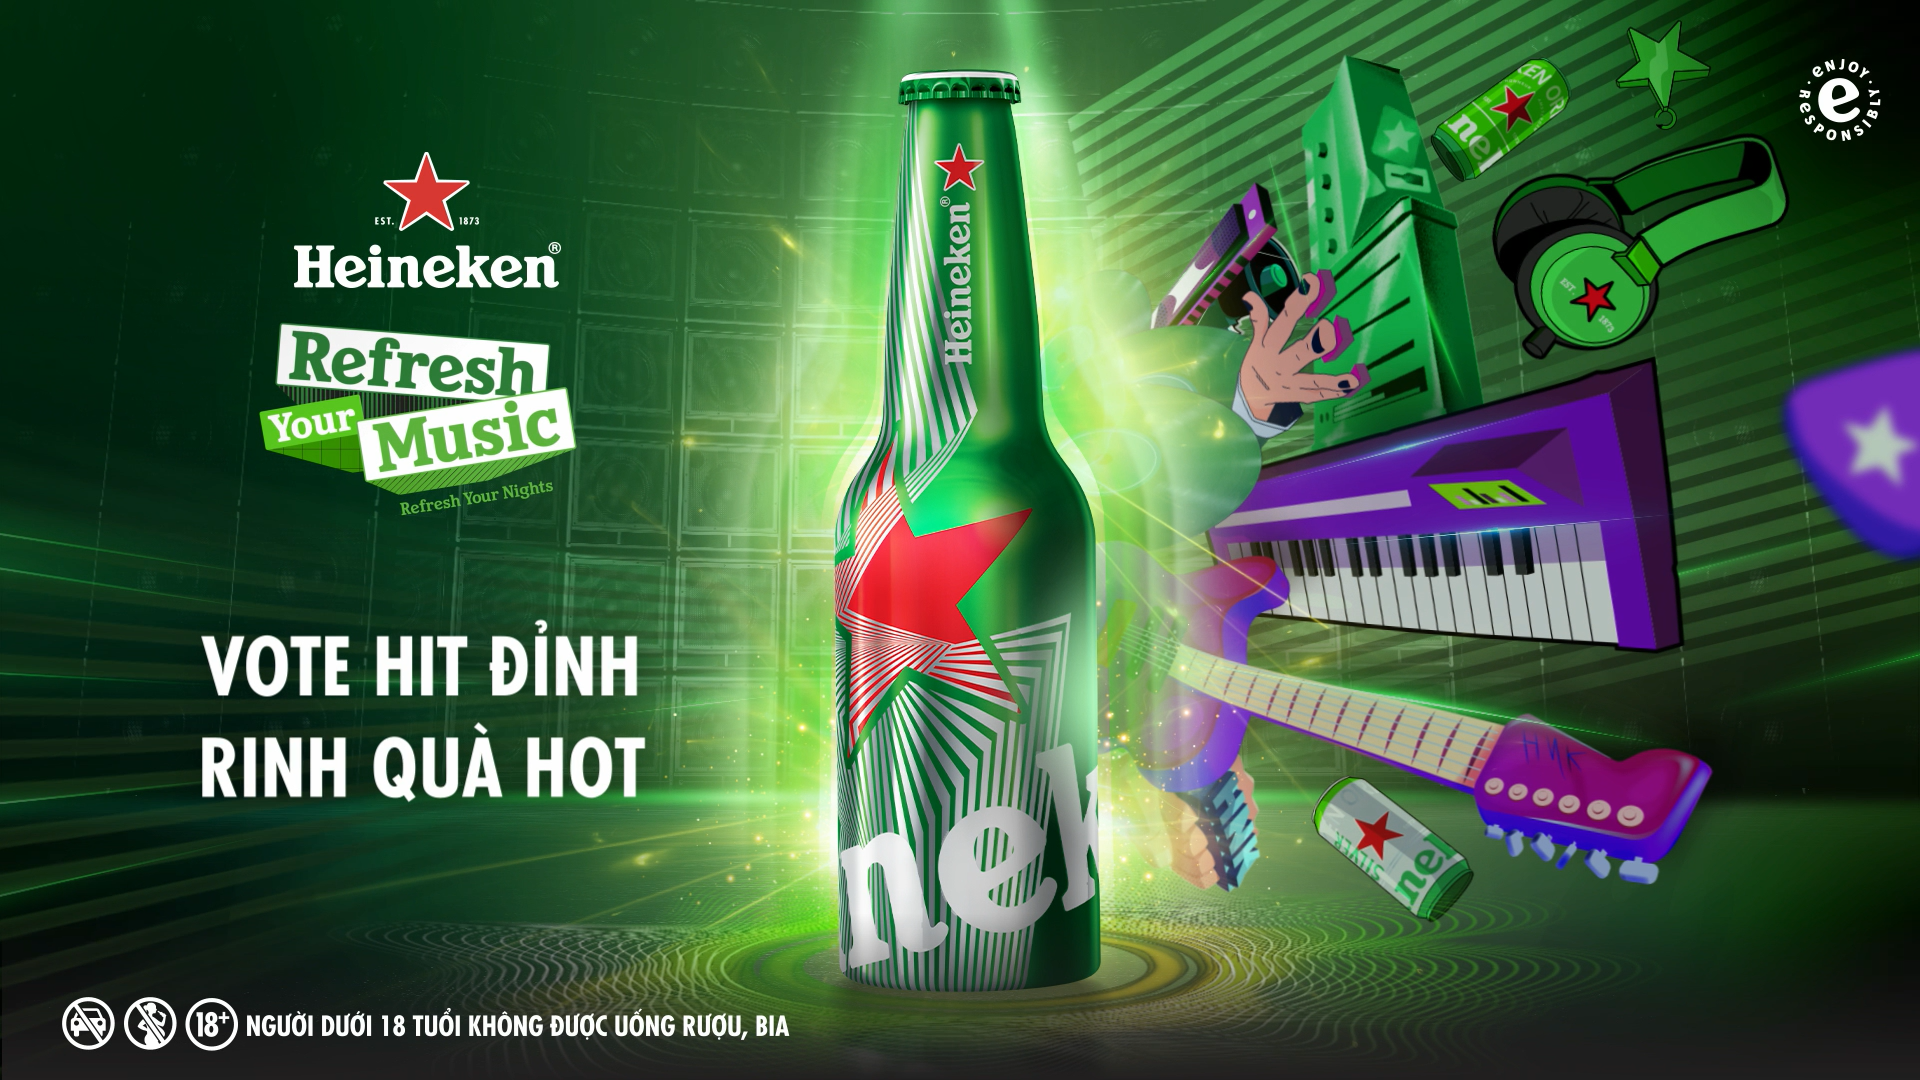 Chuyện lạ có thật: Heineken “chơi lớn trao quyền” cho khán giả “refresh” nhạc  của The Chainsmokers - ảnh 5